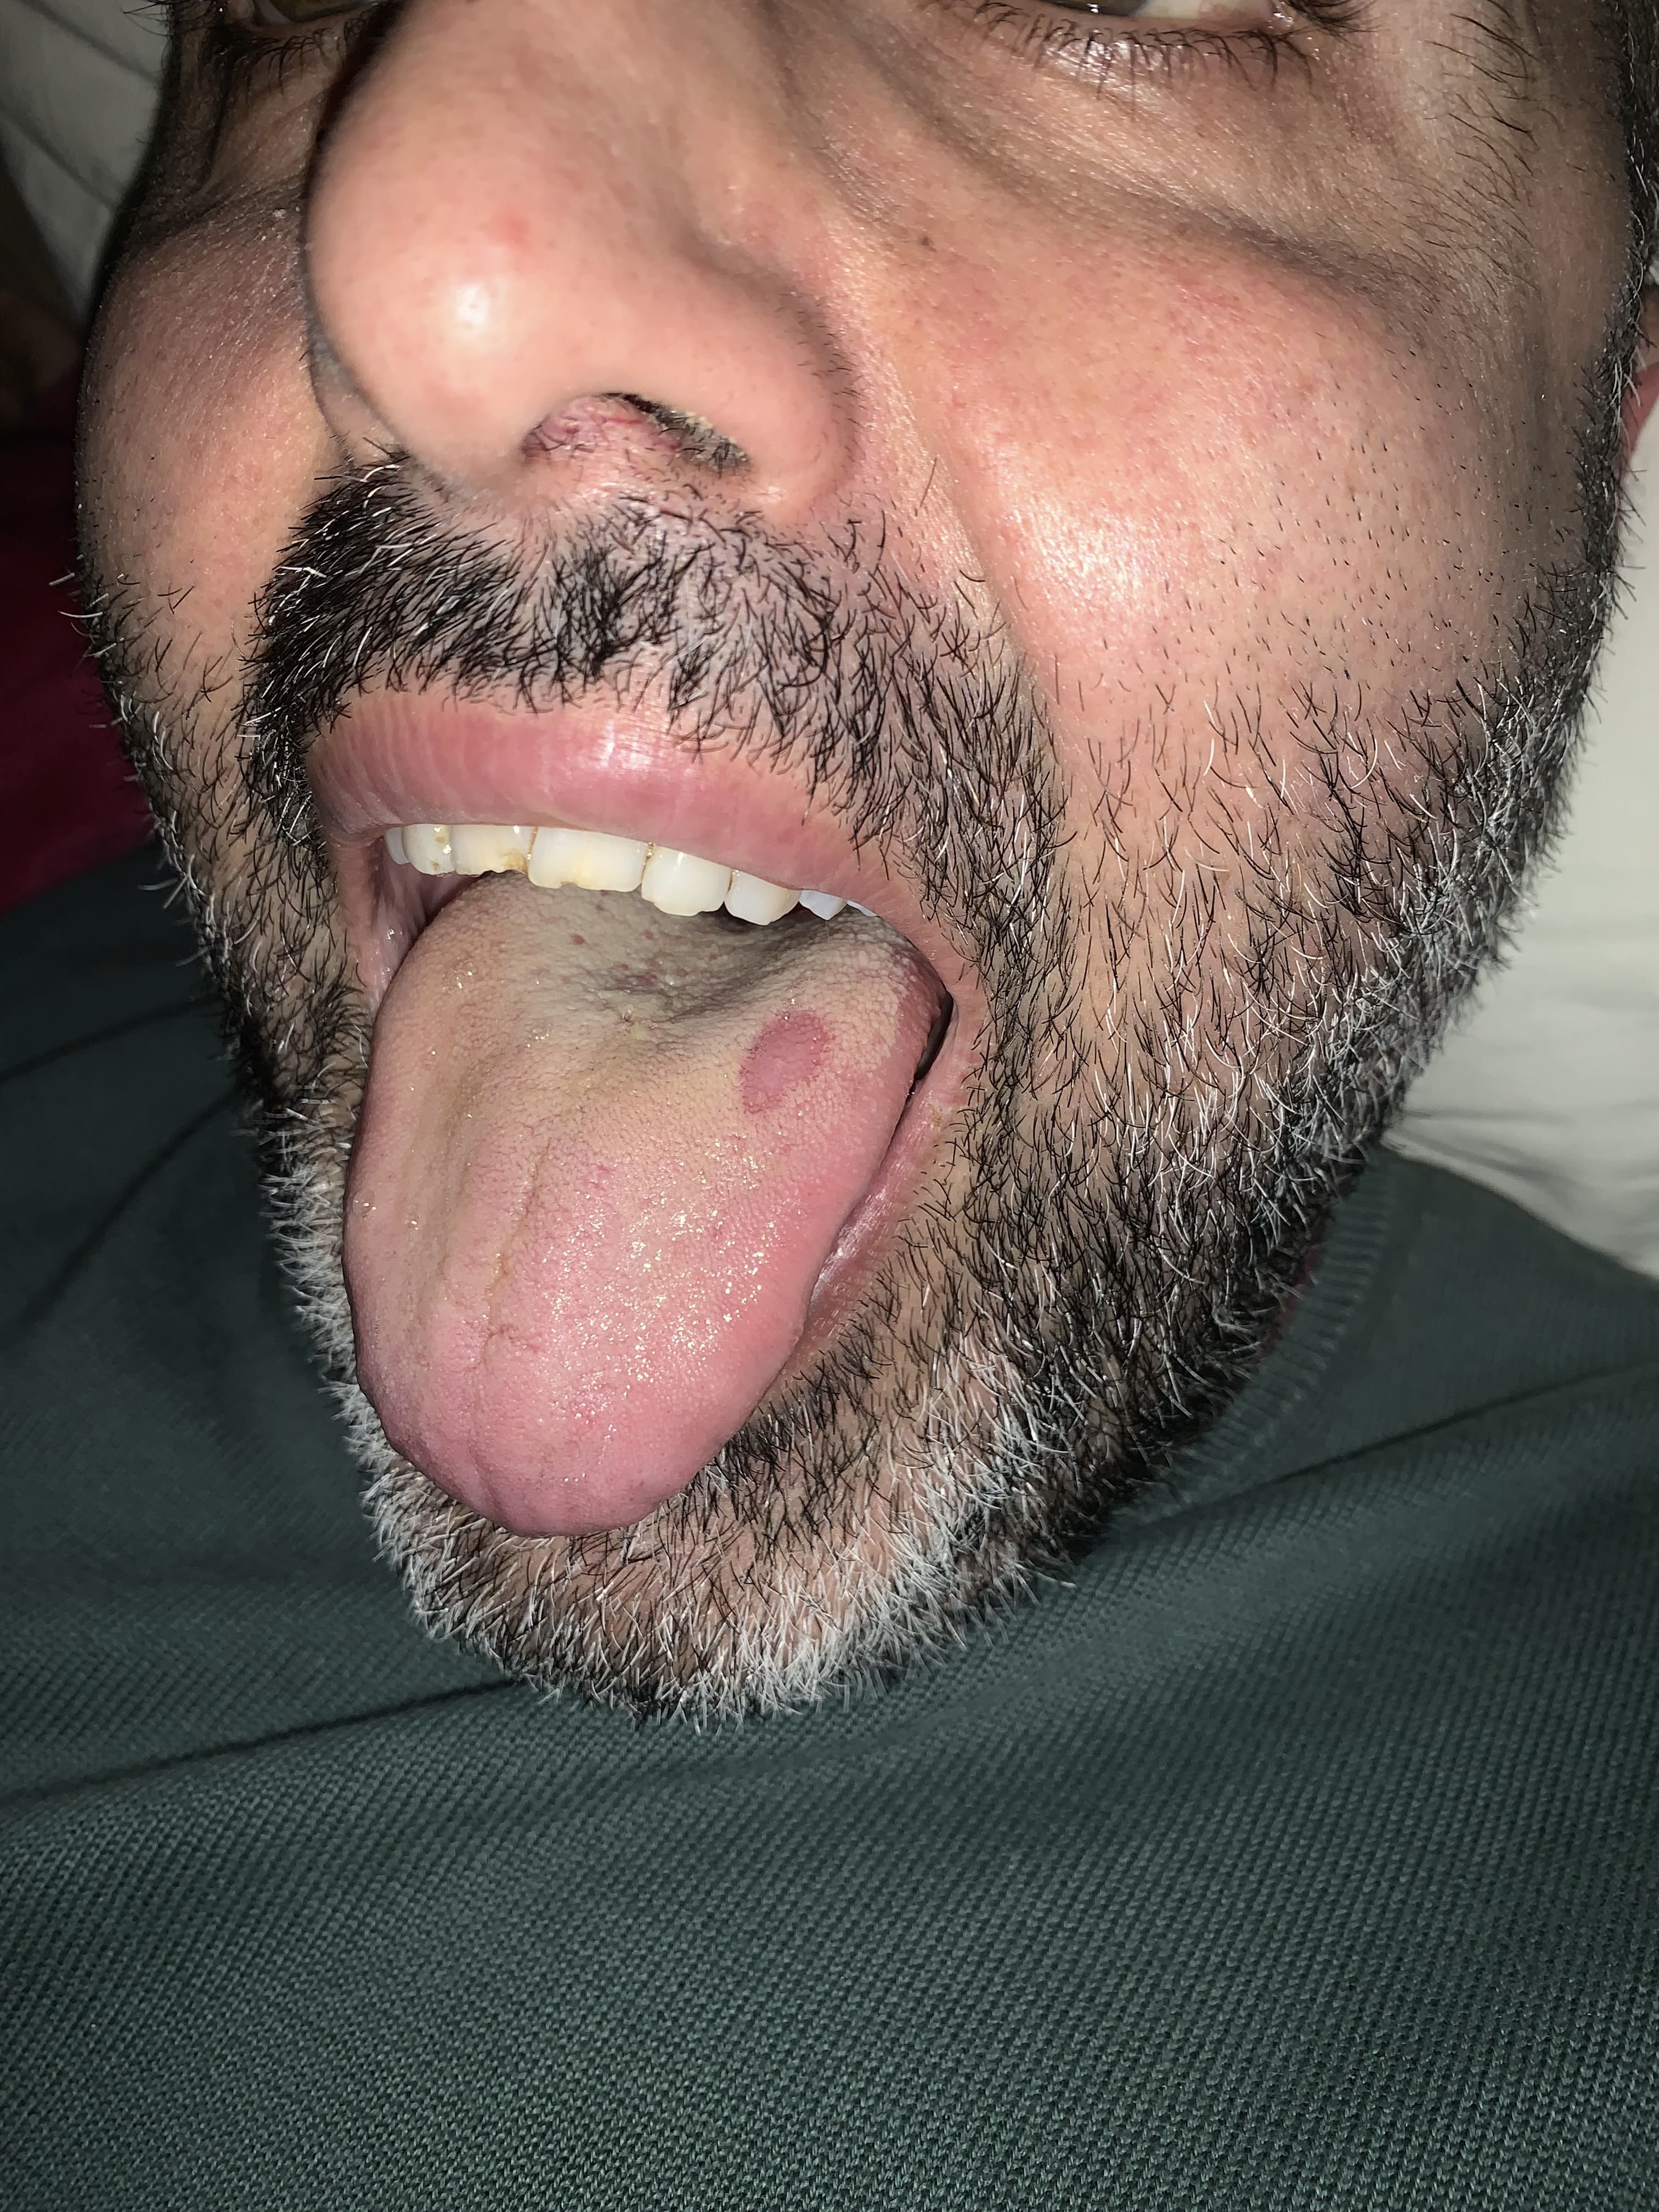 Da stamattina mi ritrovo una macchia rossa sulla lingua